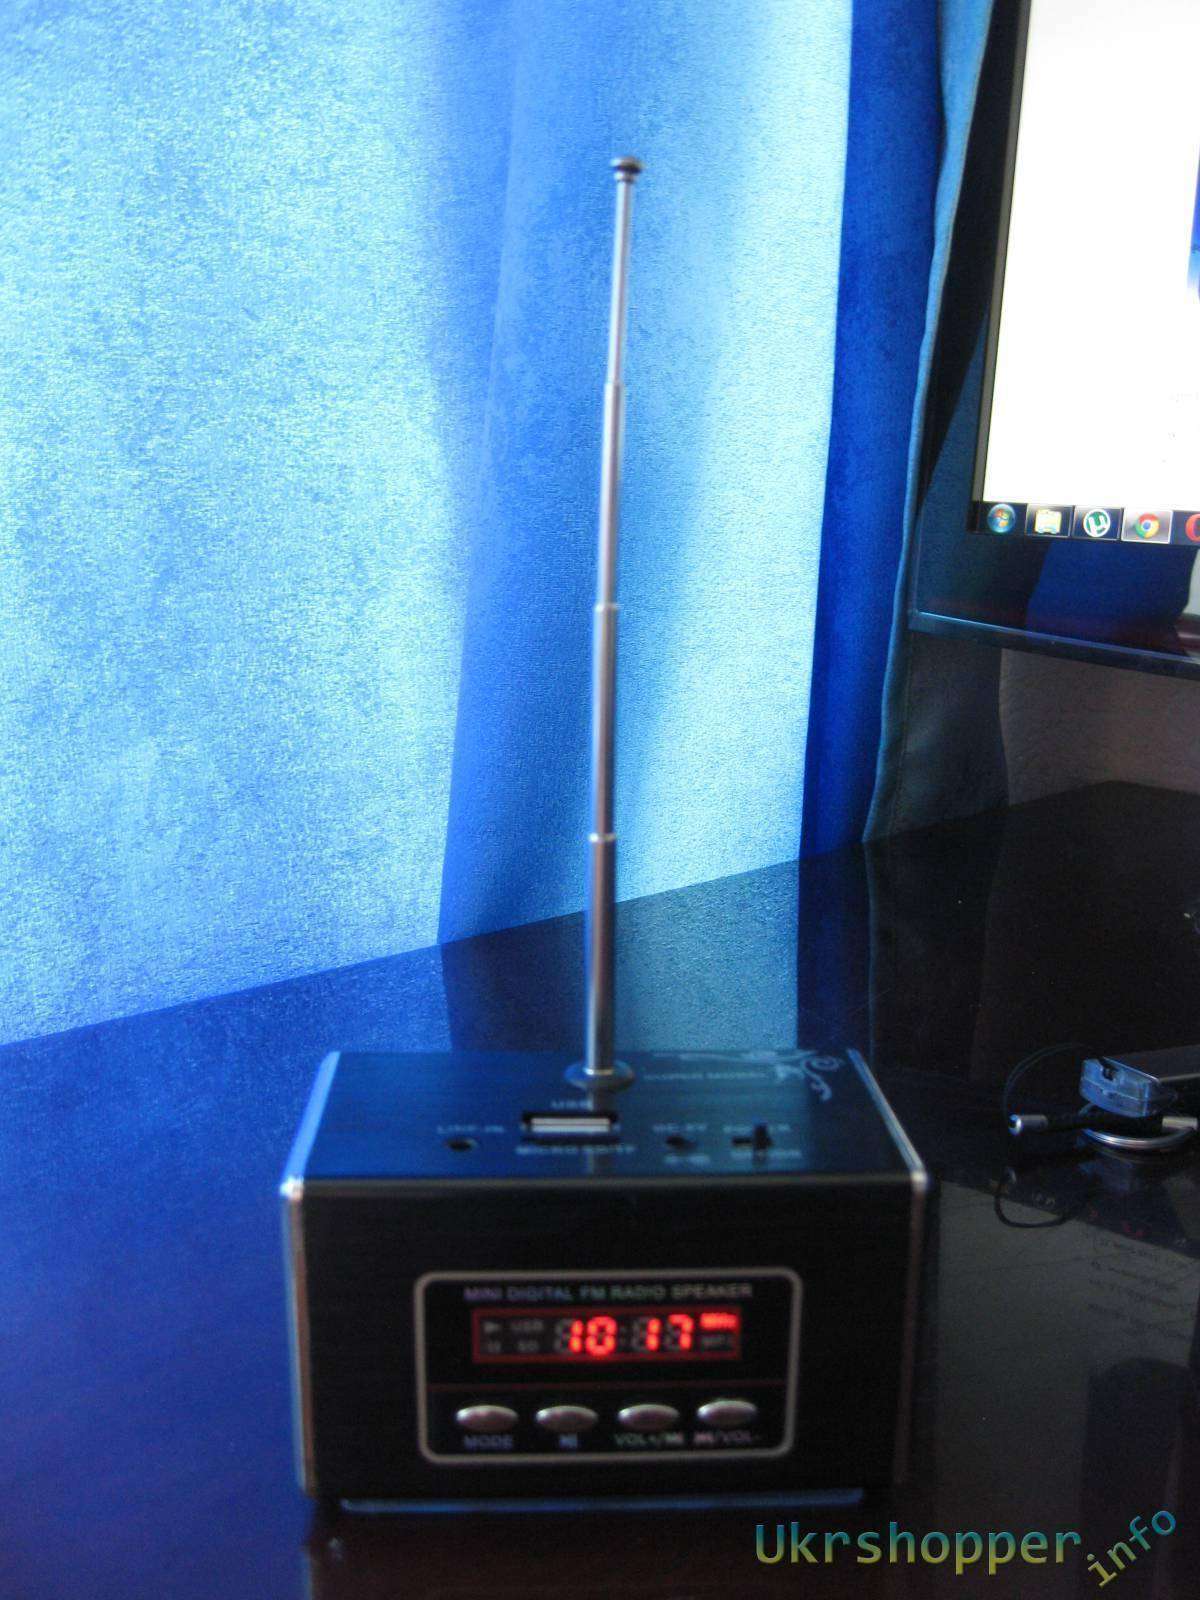 Aliexpress: Компактный и качественный спикер c FM радио